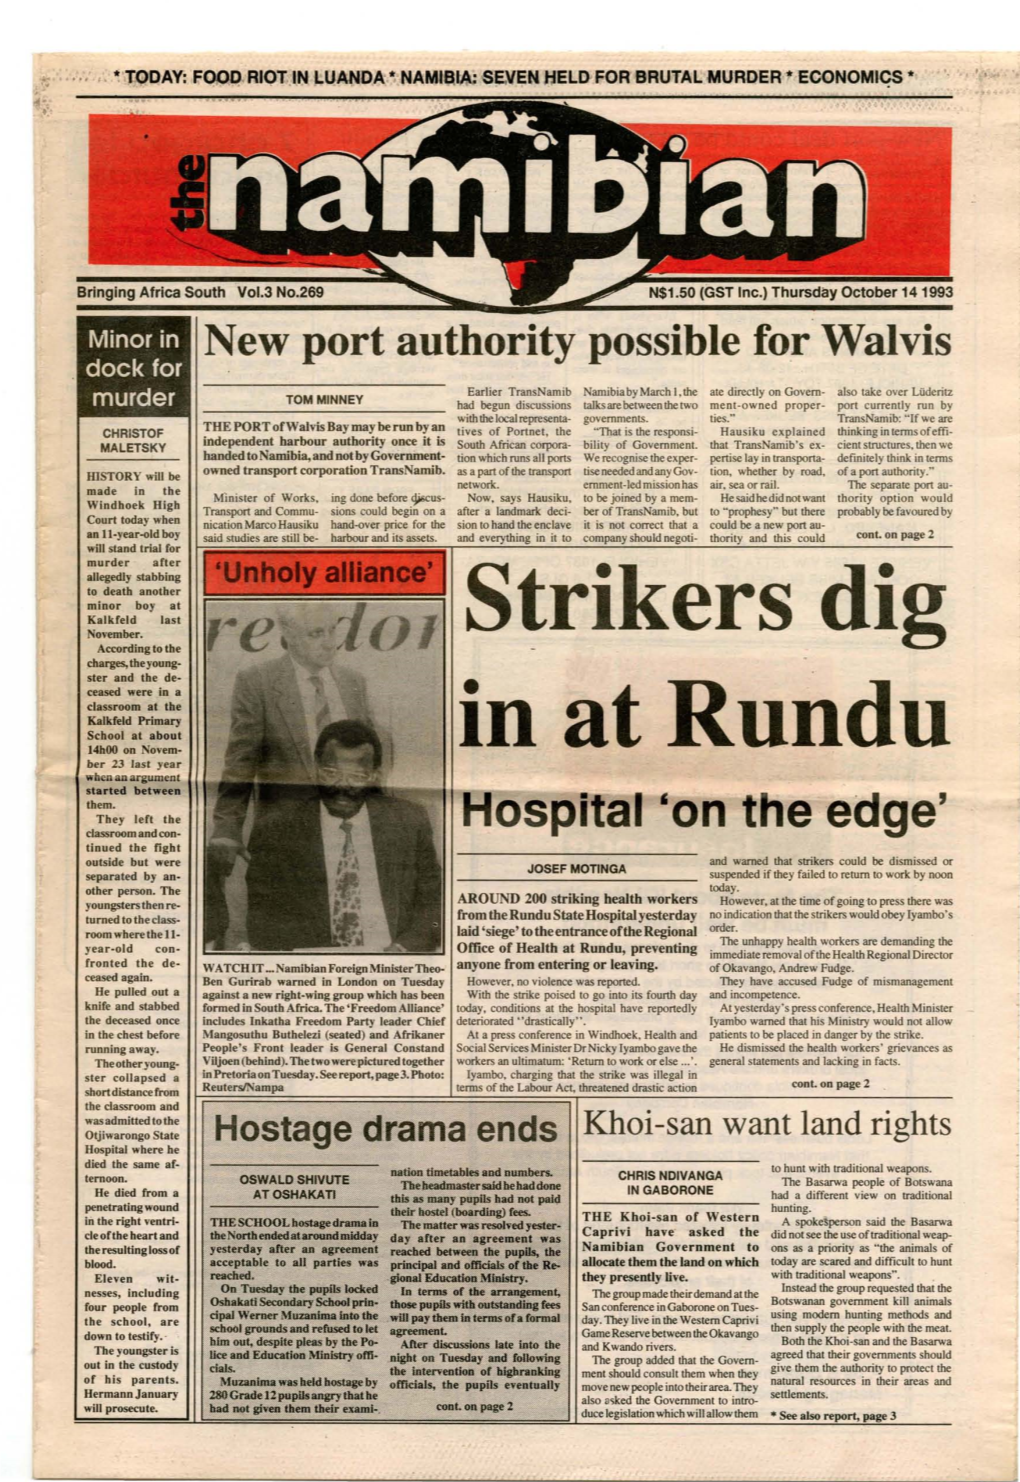 14 October 1993